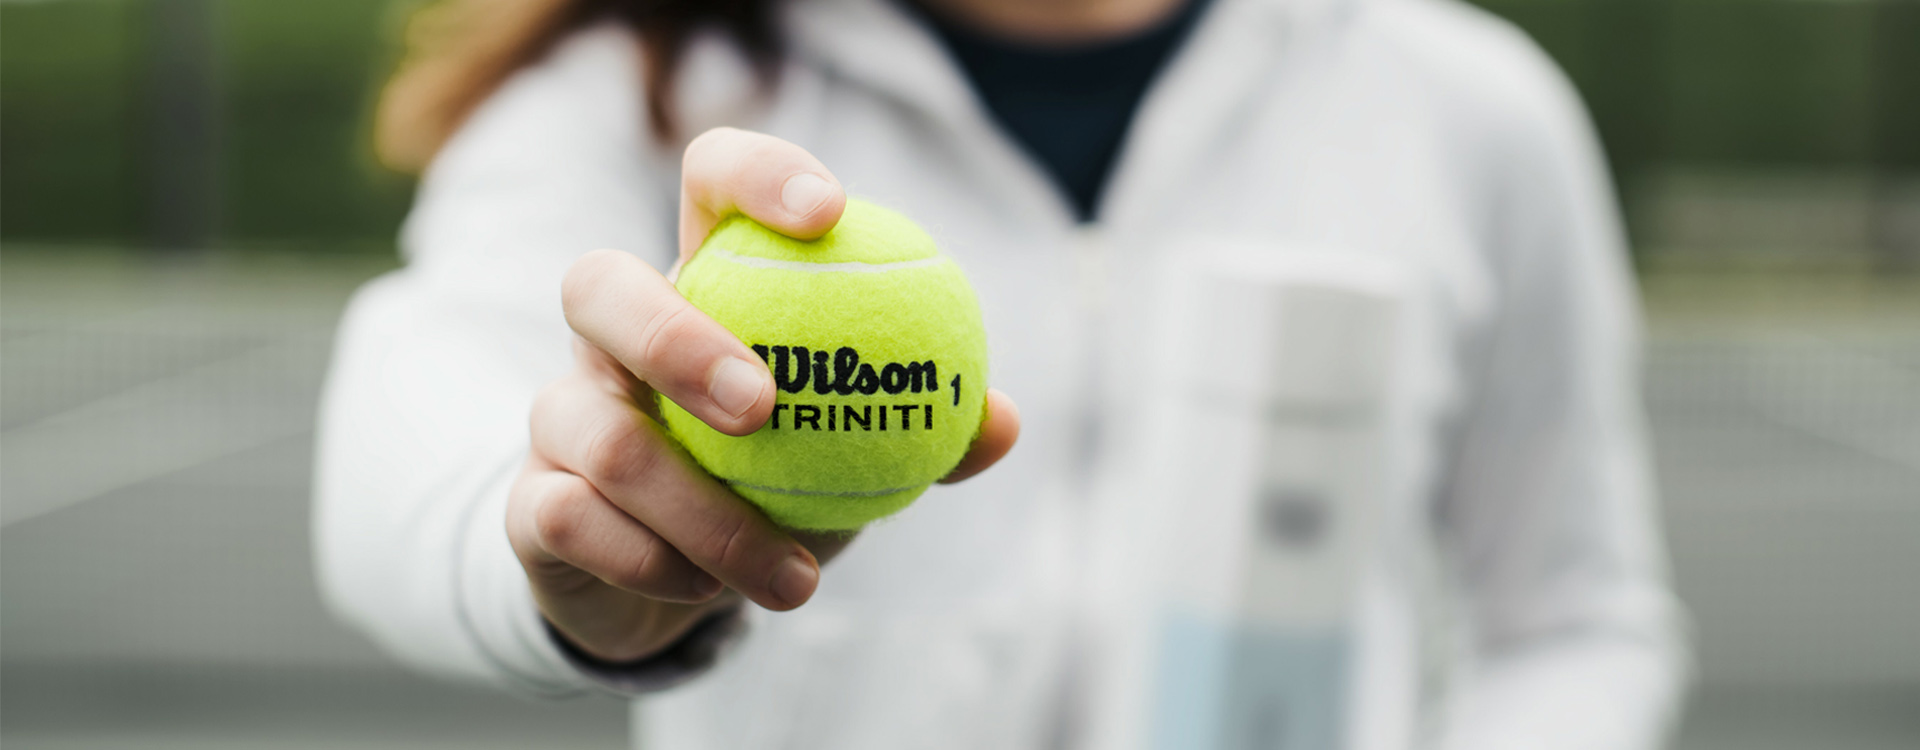 Η ερώτηση του αιώνα: Τελικά τι χρώμα έχει το μπαλάκι του τένις;